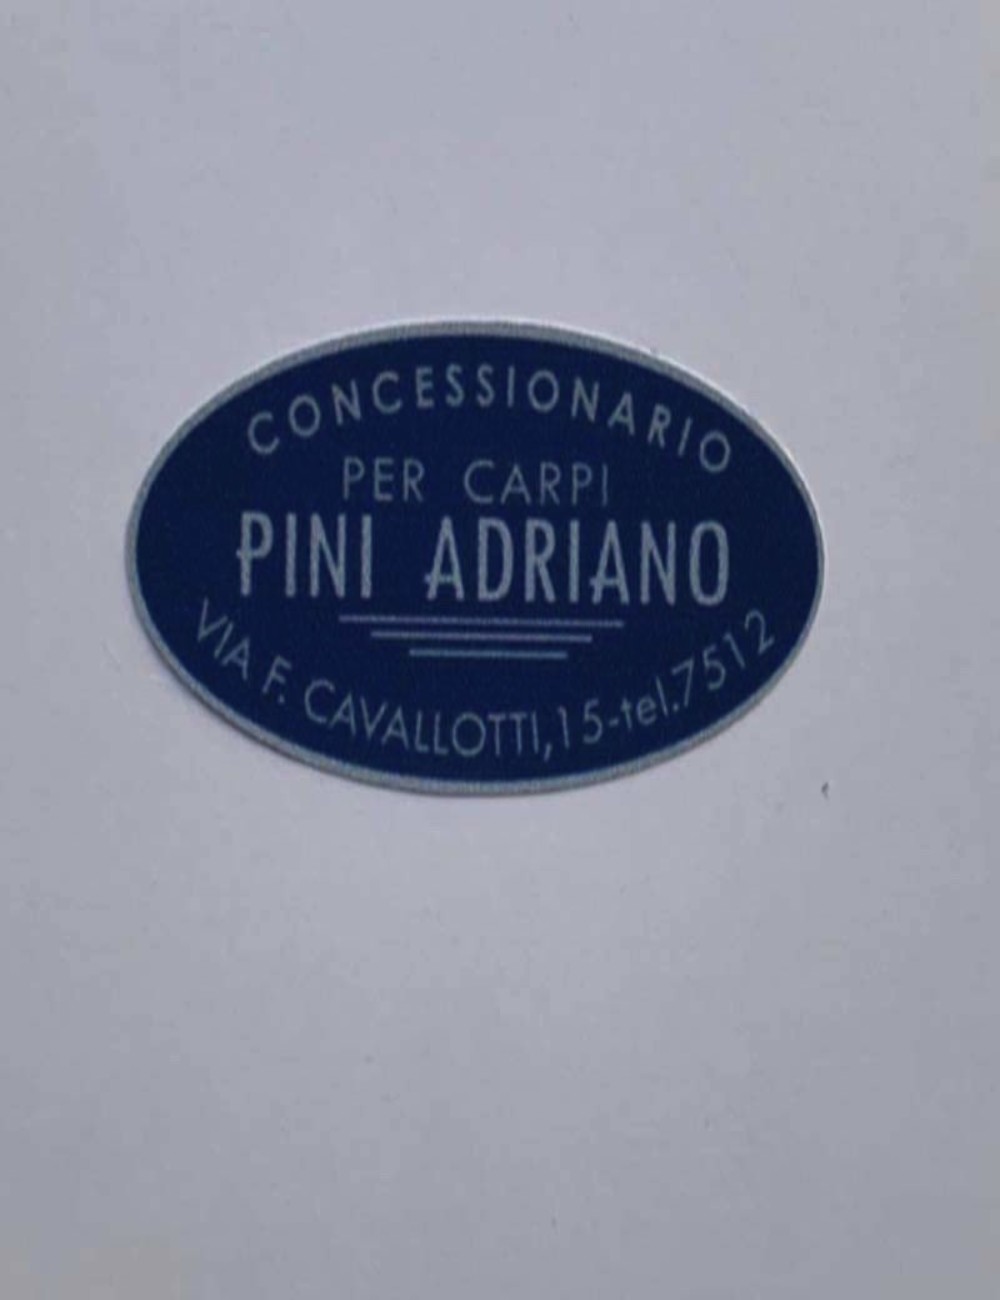 Adesivo concessionario Pini Adriano. Dimensioni : 5cm x 2,7cm